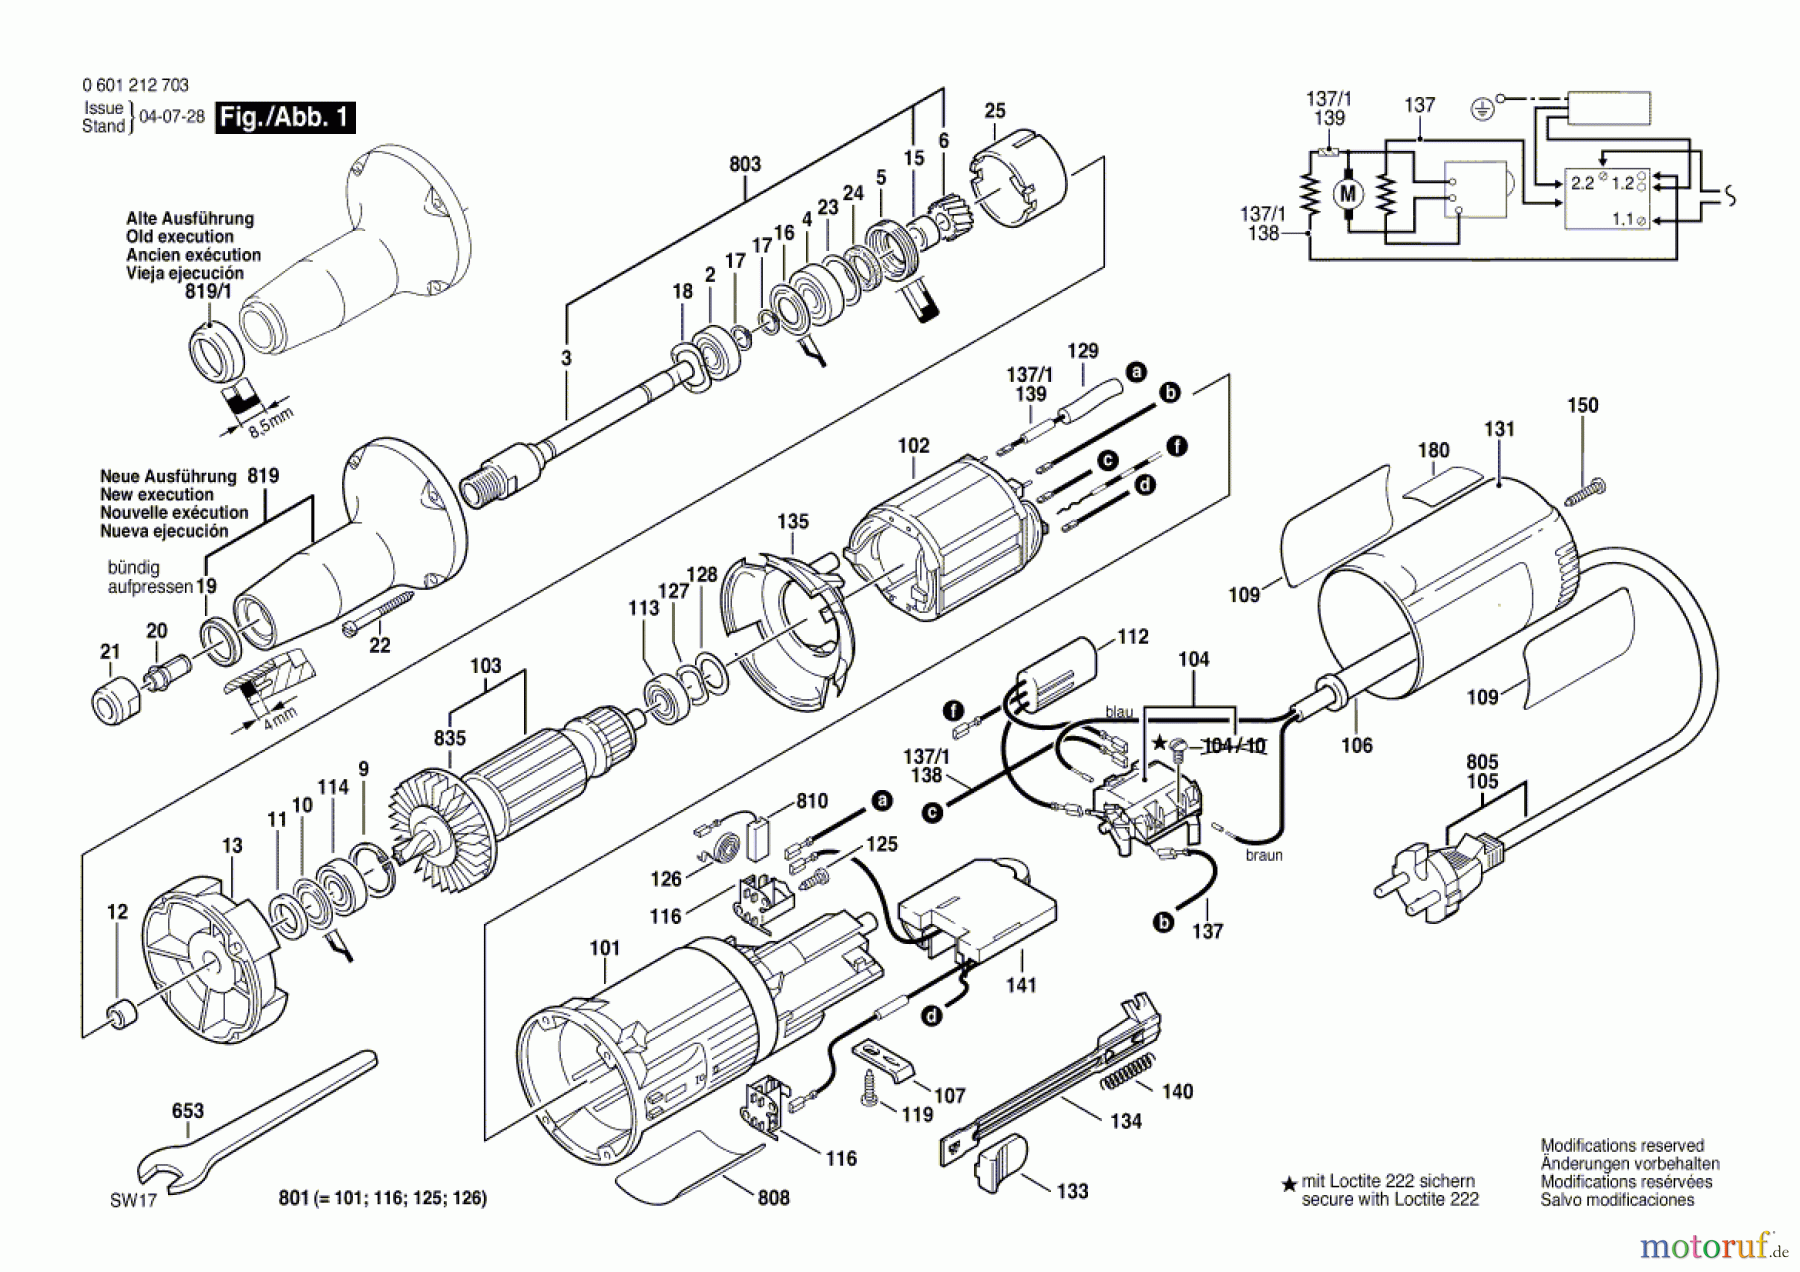  Bosch Werkzeug Geradschleifer GGS 7 C Seite 1